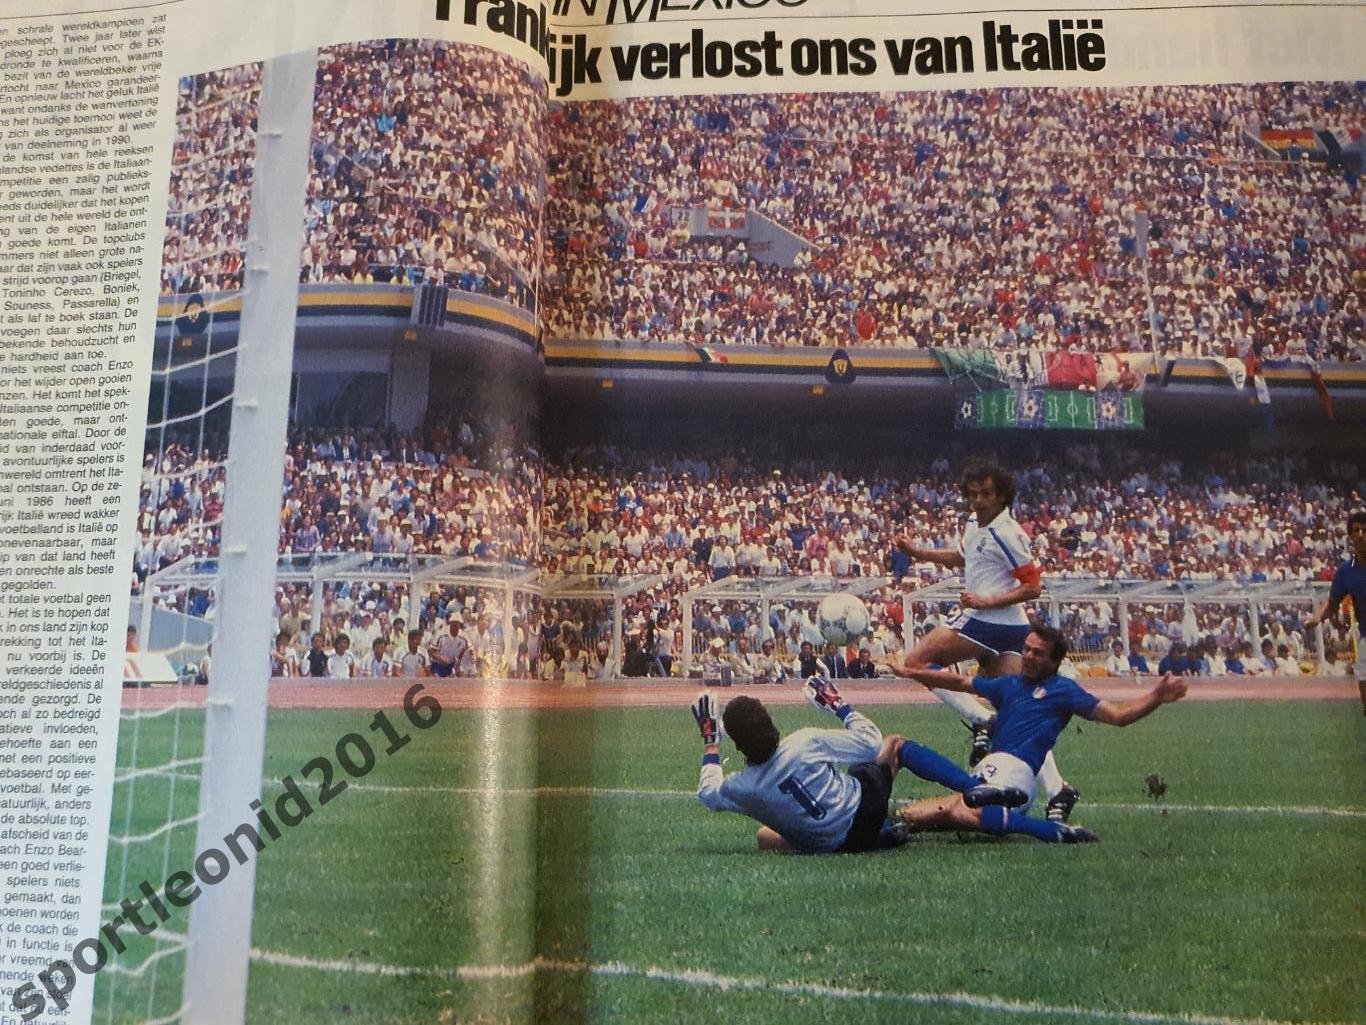 Voetbal International 1986.14 топ выпусков.В том числе итоговые к ЧМ-86.3 6